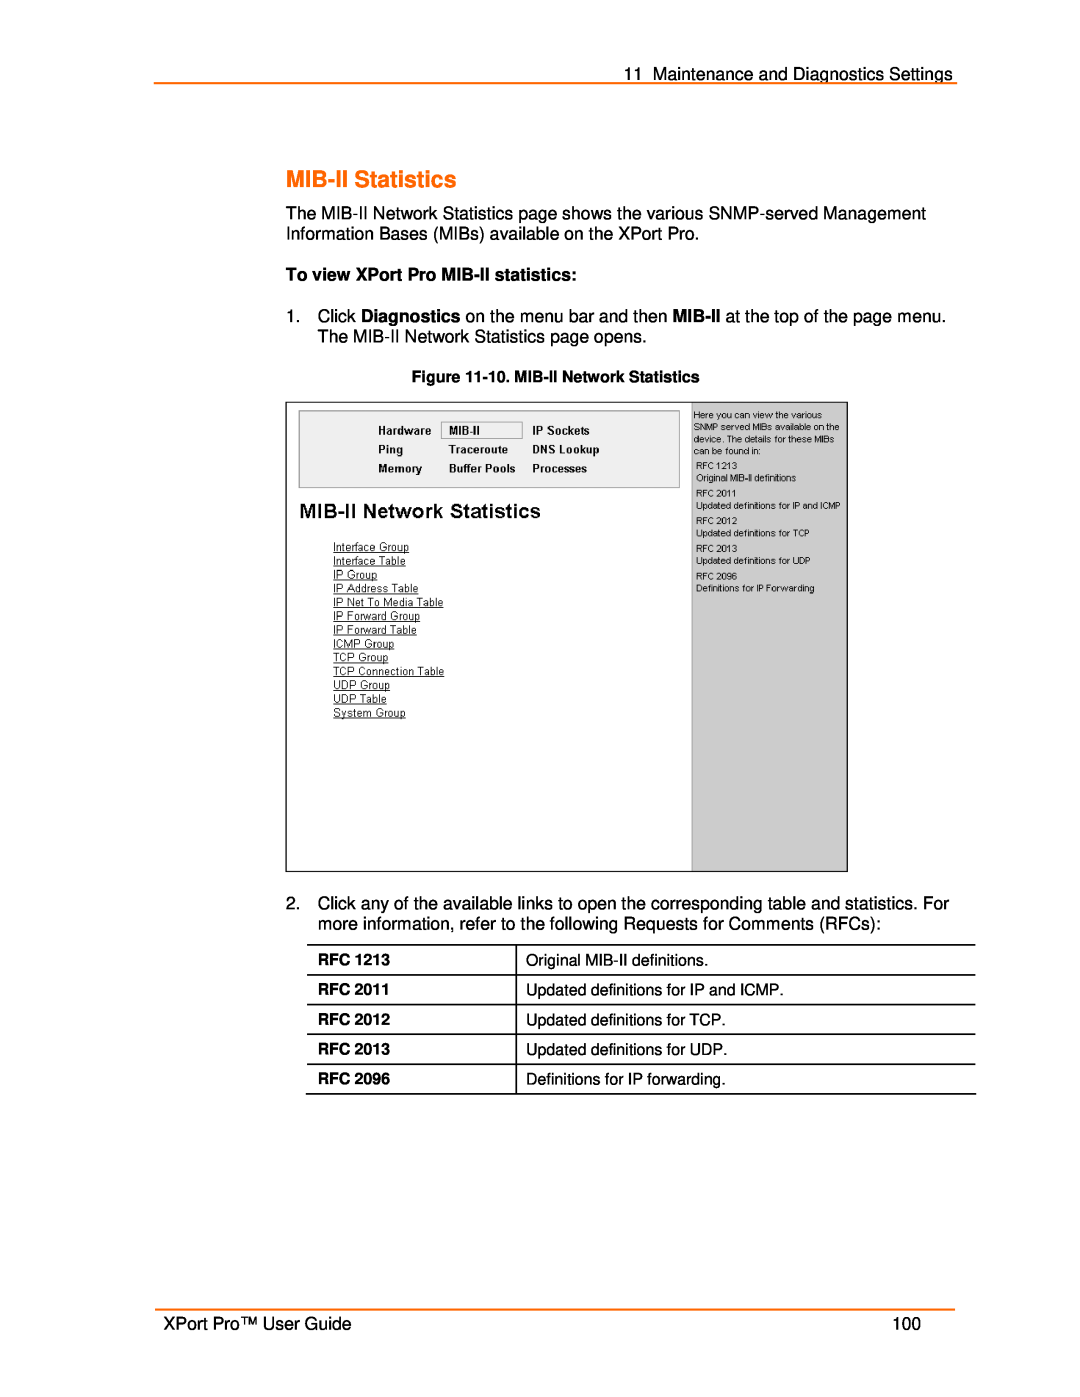 Lantronix 900-560 manual MIB-II Statistics, To view XPort Pro MIB-II statistics 